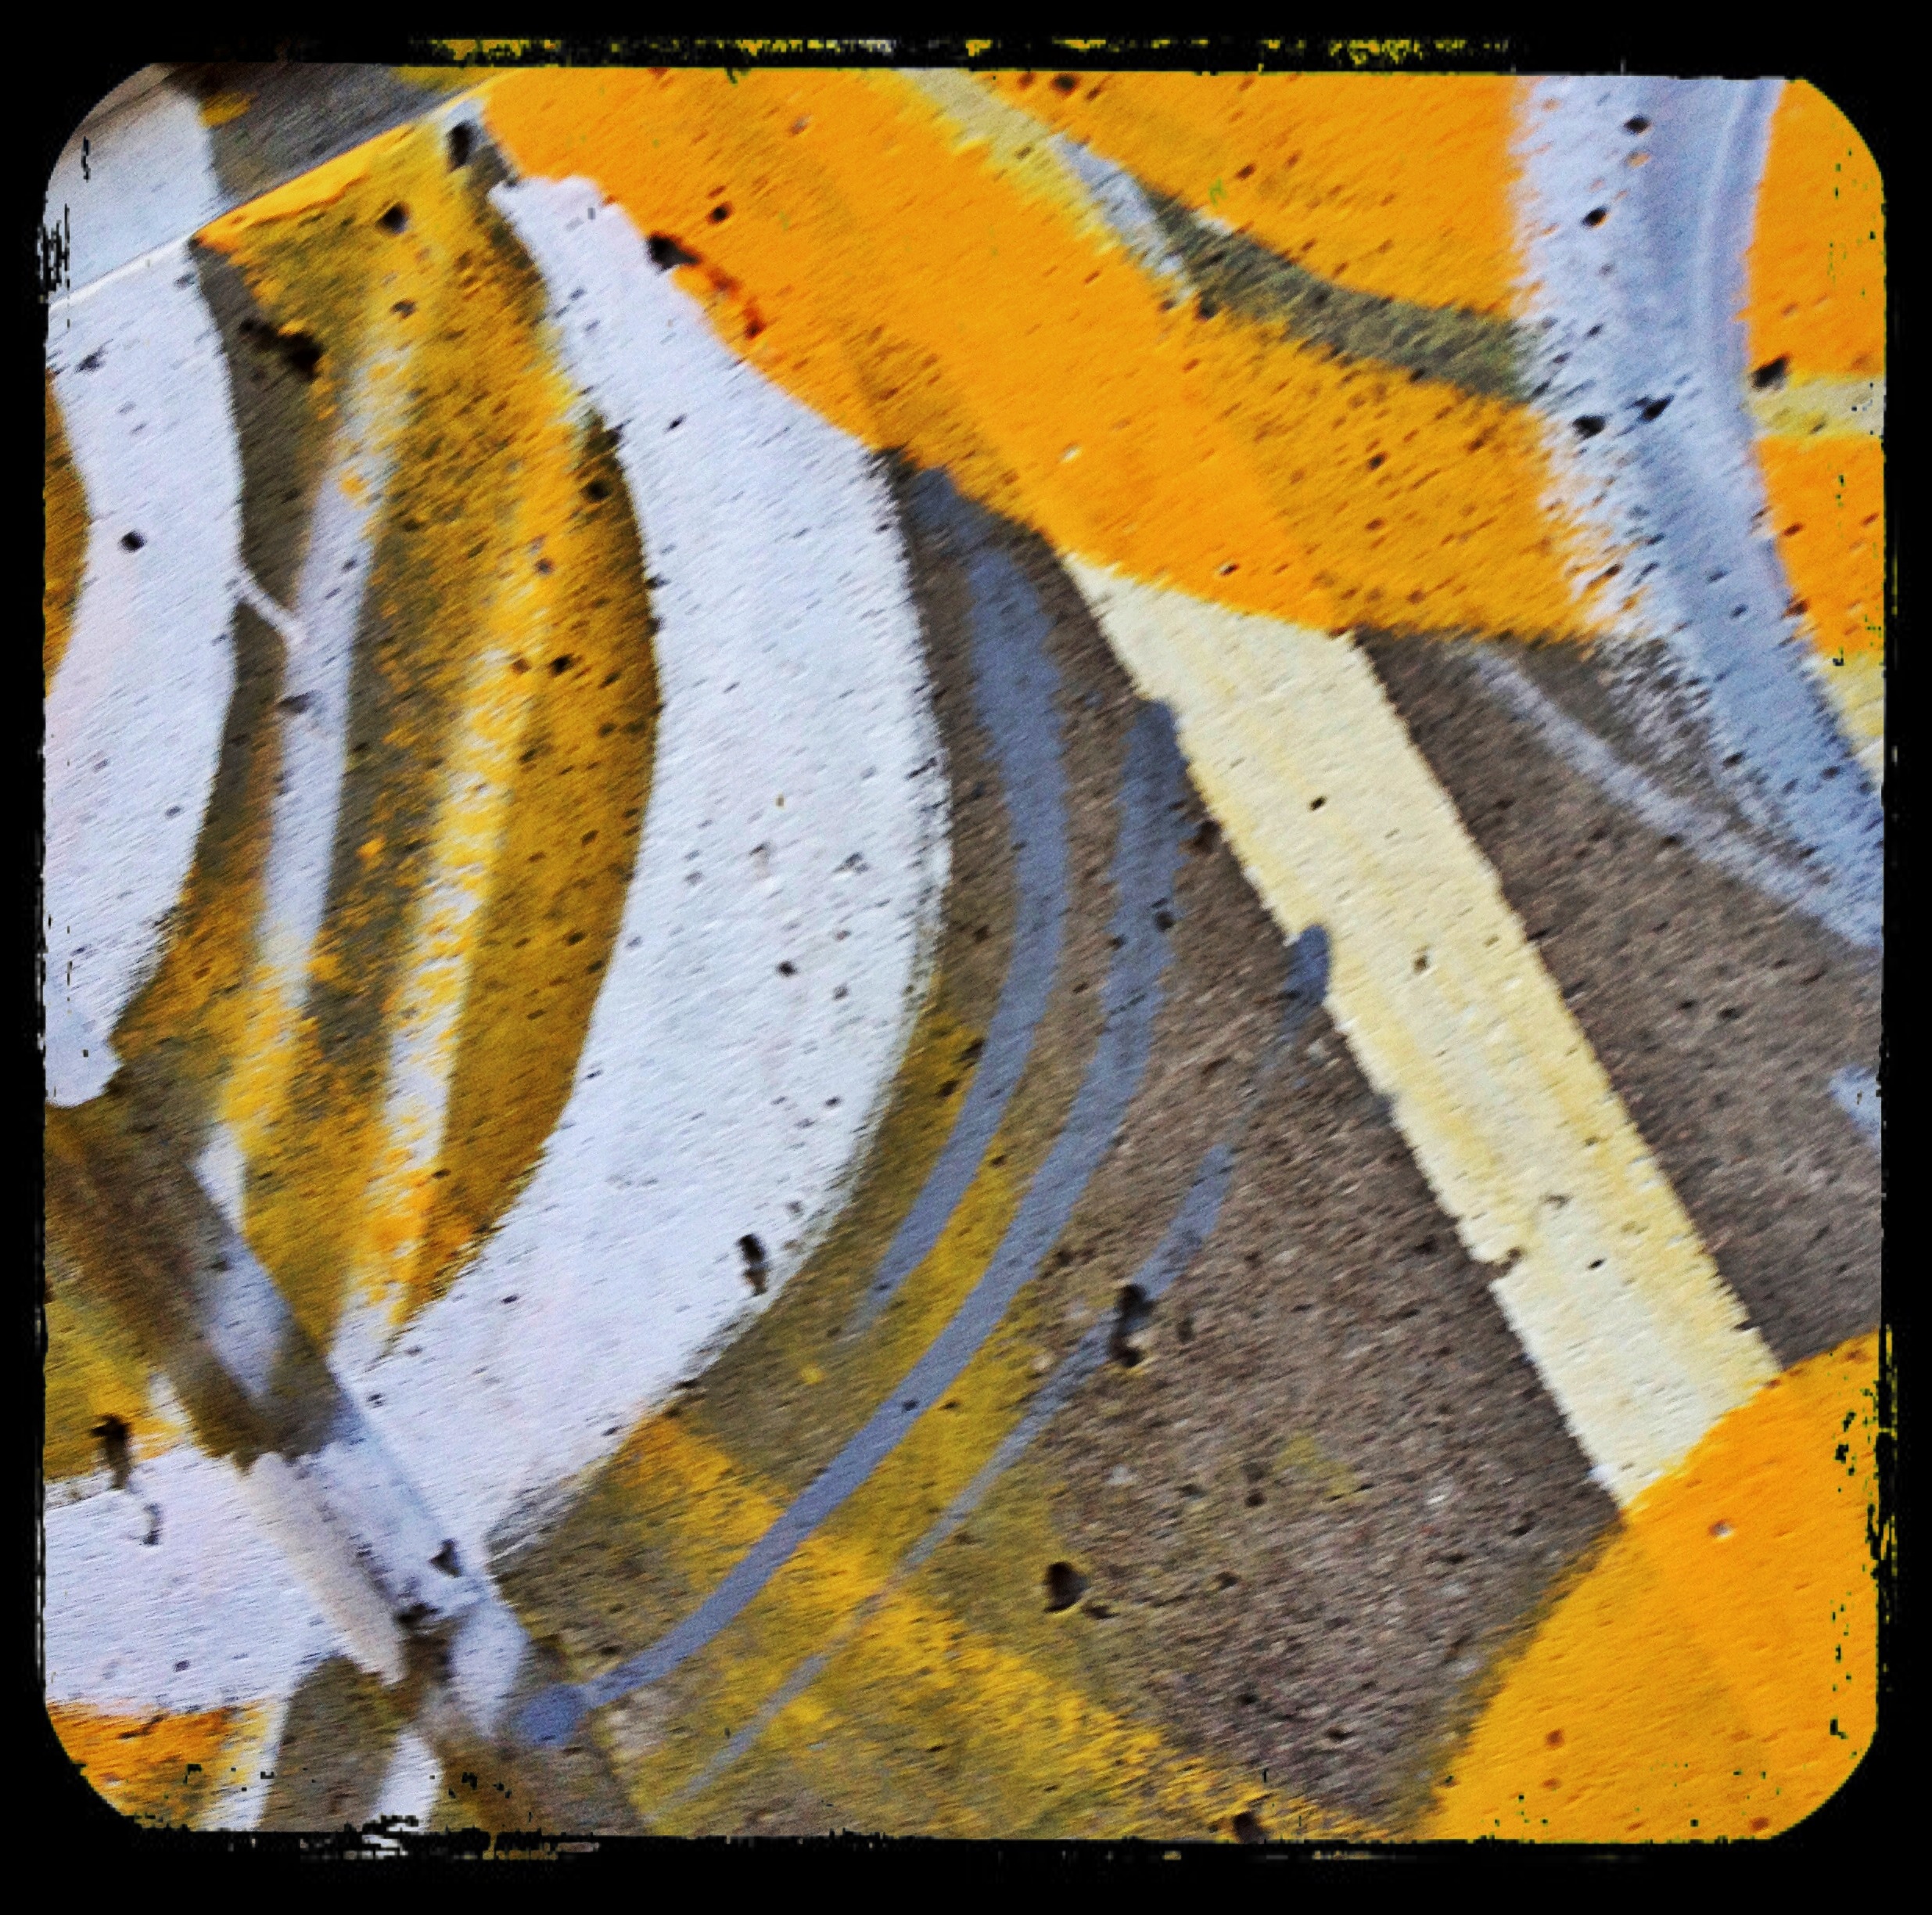 "Concrete Ripple" - Detail of graffiti at Dupont & Symington, Toronto